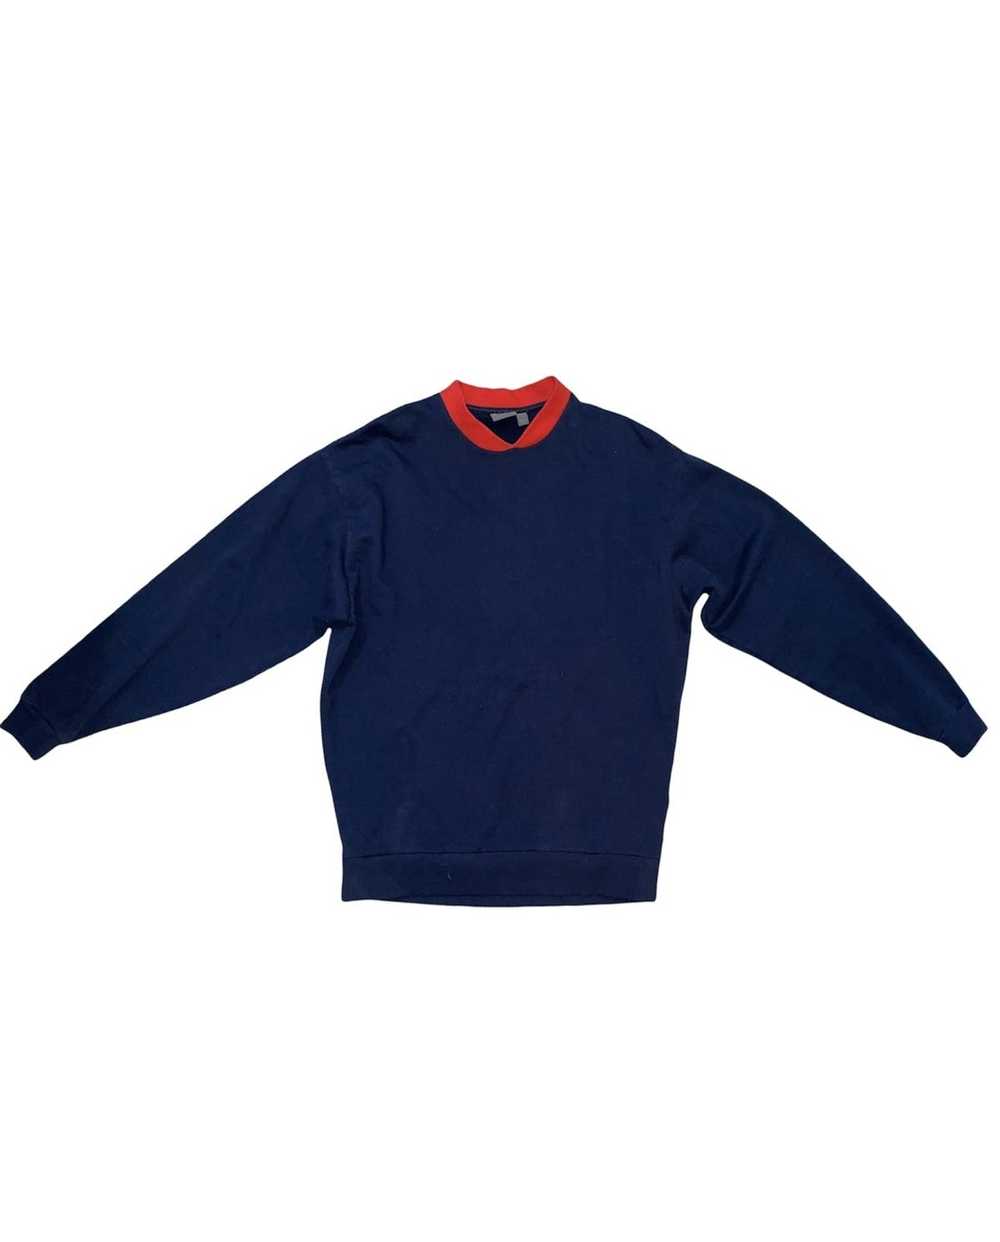 Asos Oversized Sweatershirt - image 1